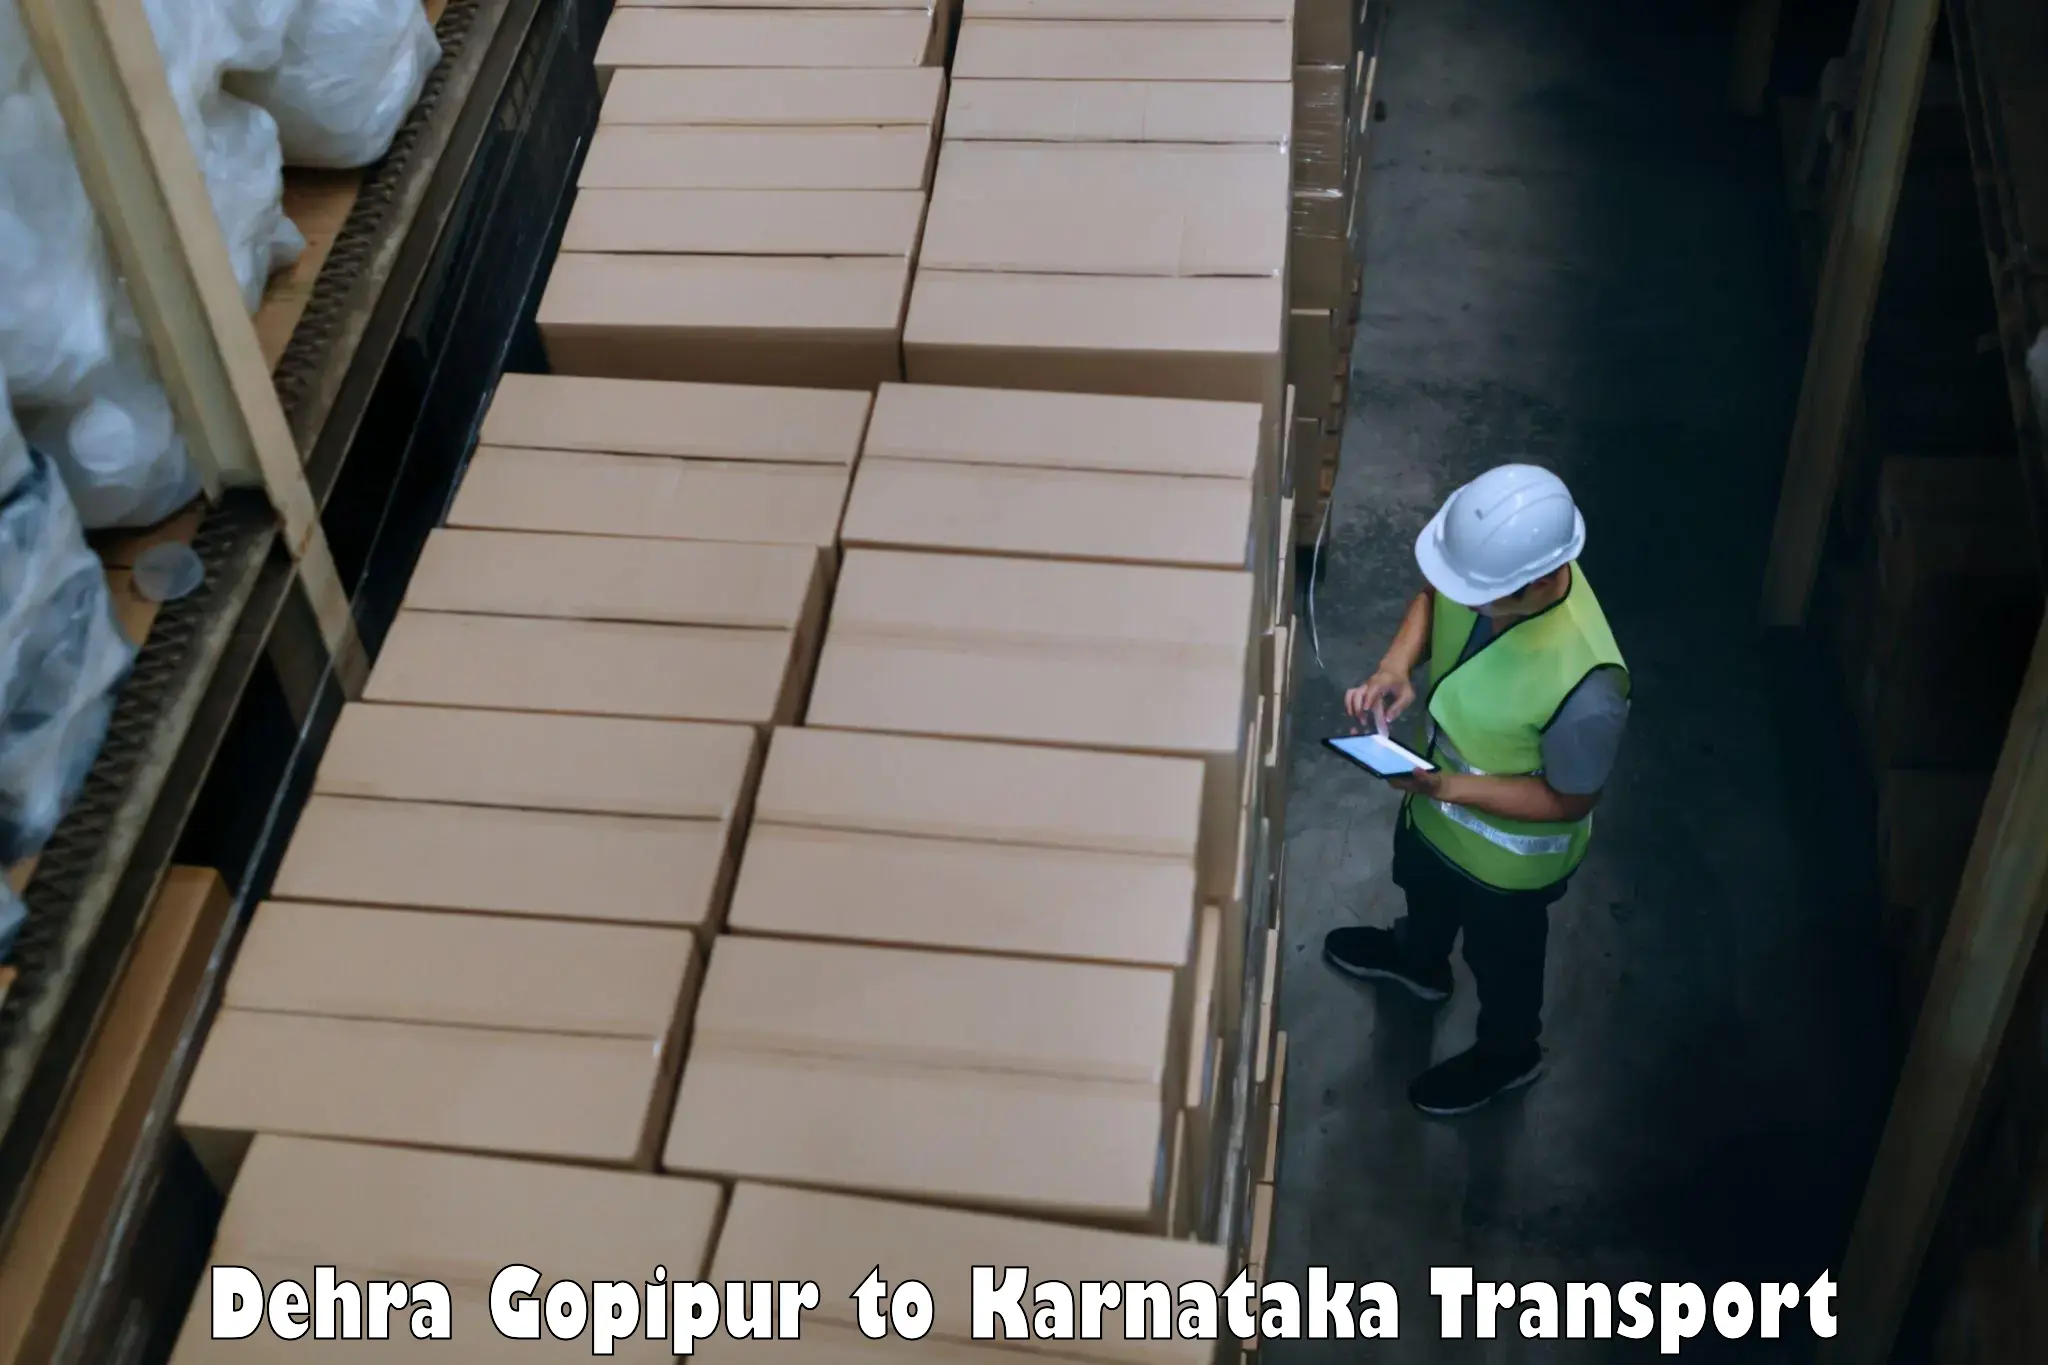 Road transport online services Dehra Gopipur to Chamarajanagar